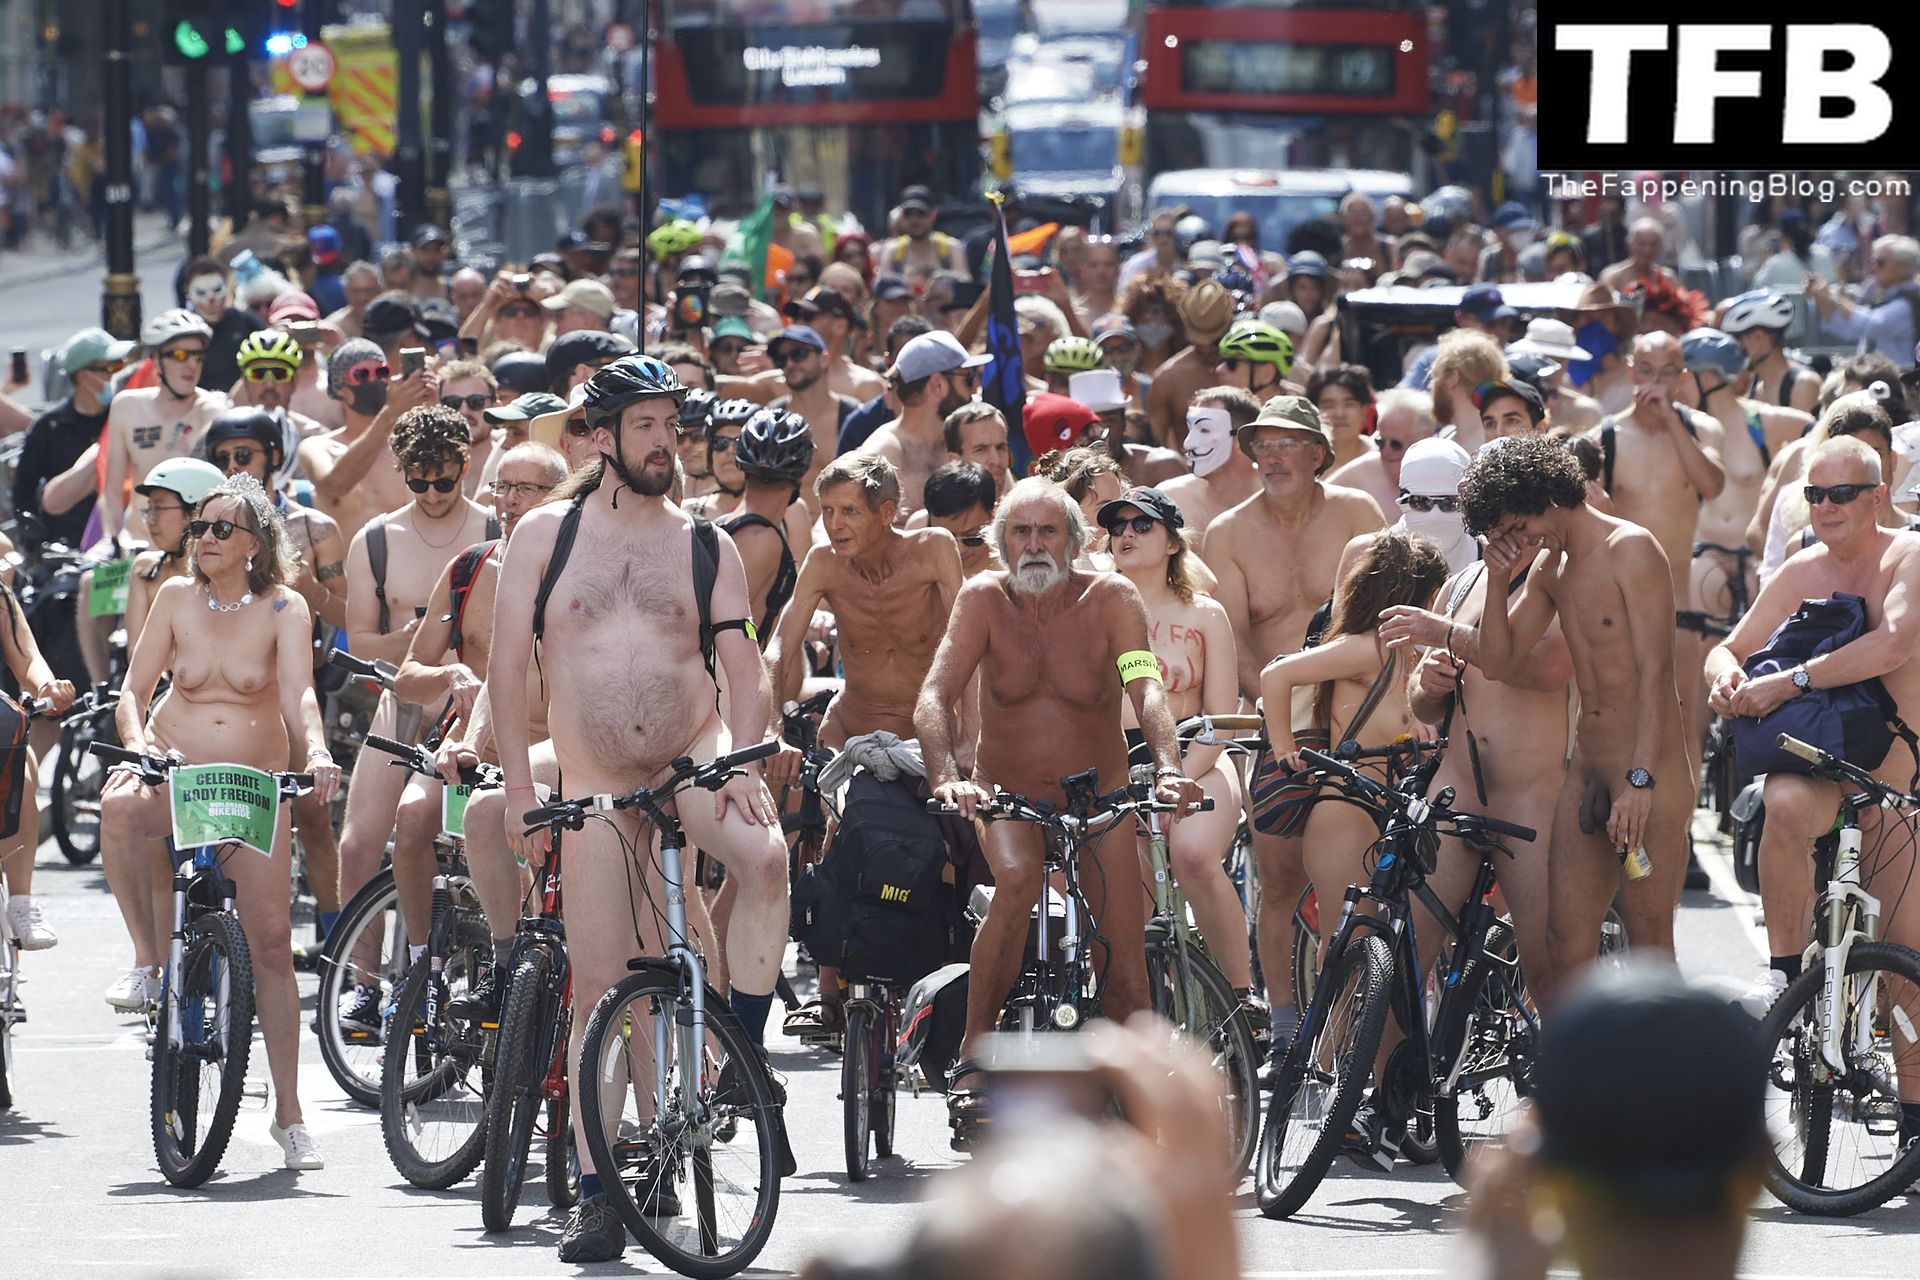 The-2022-World-Naked-Bike-Ride-The-Fappening-Blog-51.jpg